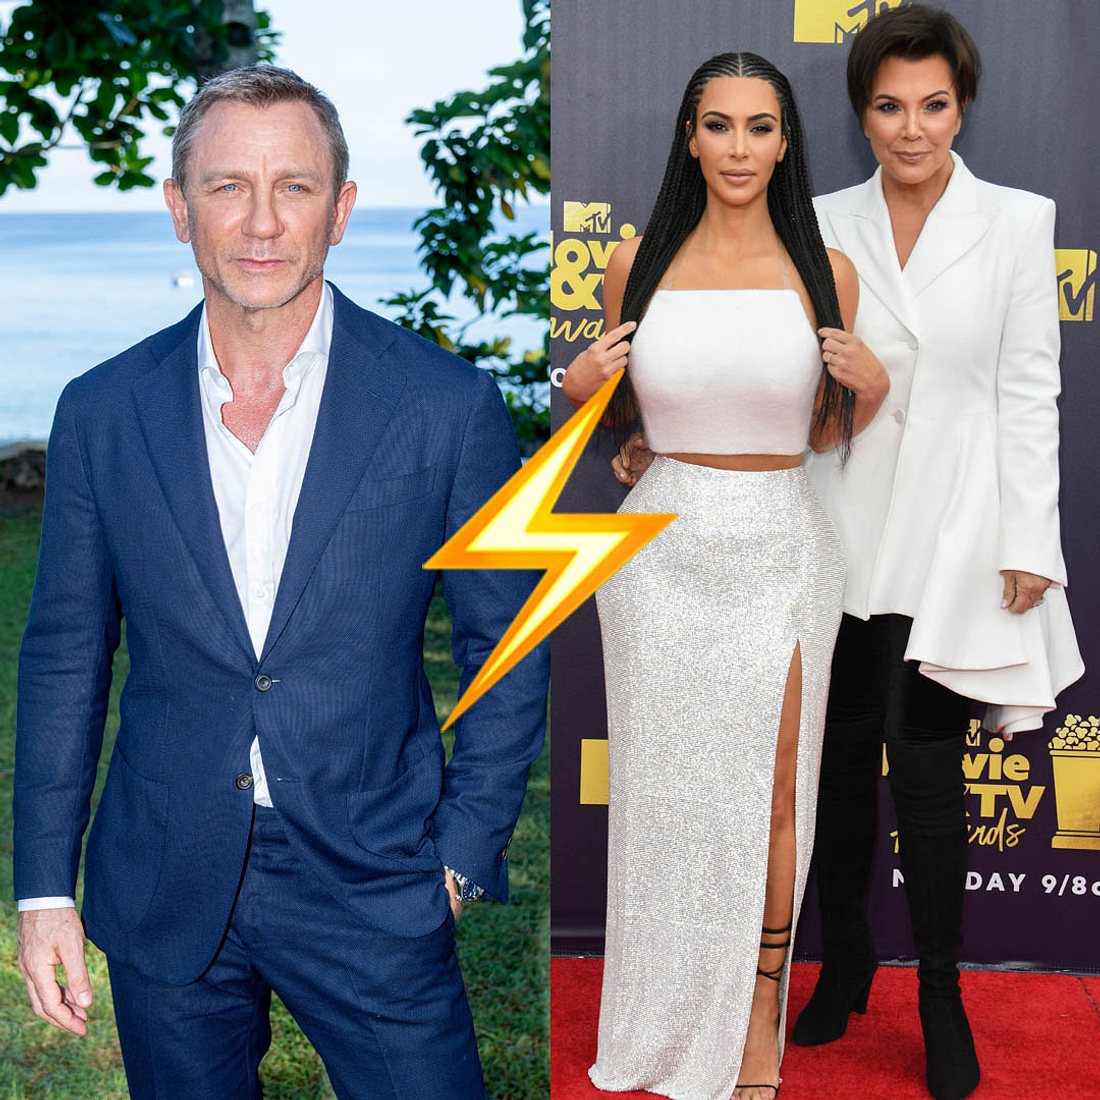 Stars beschimpfen Stars: Daniel Craig disst die Kardashians